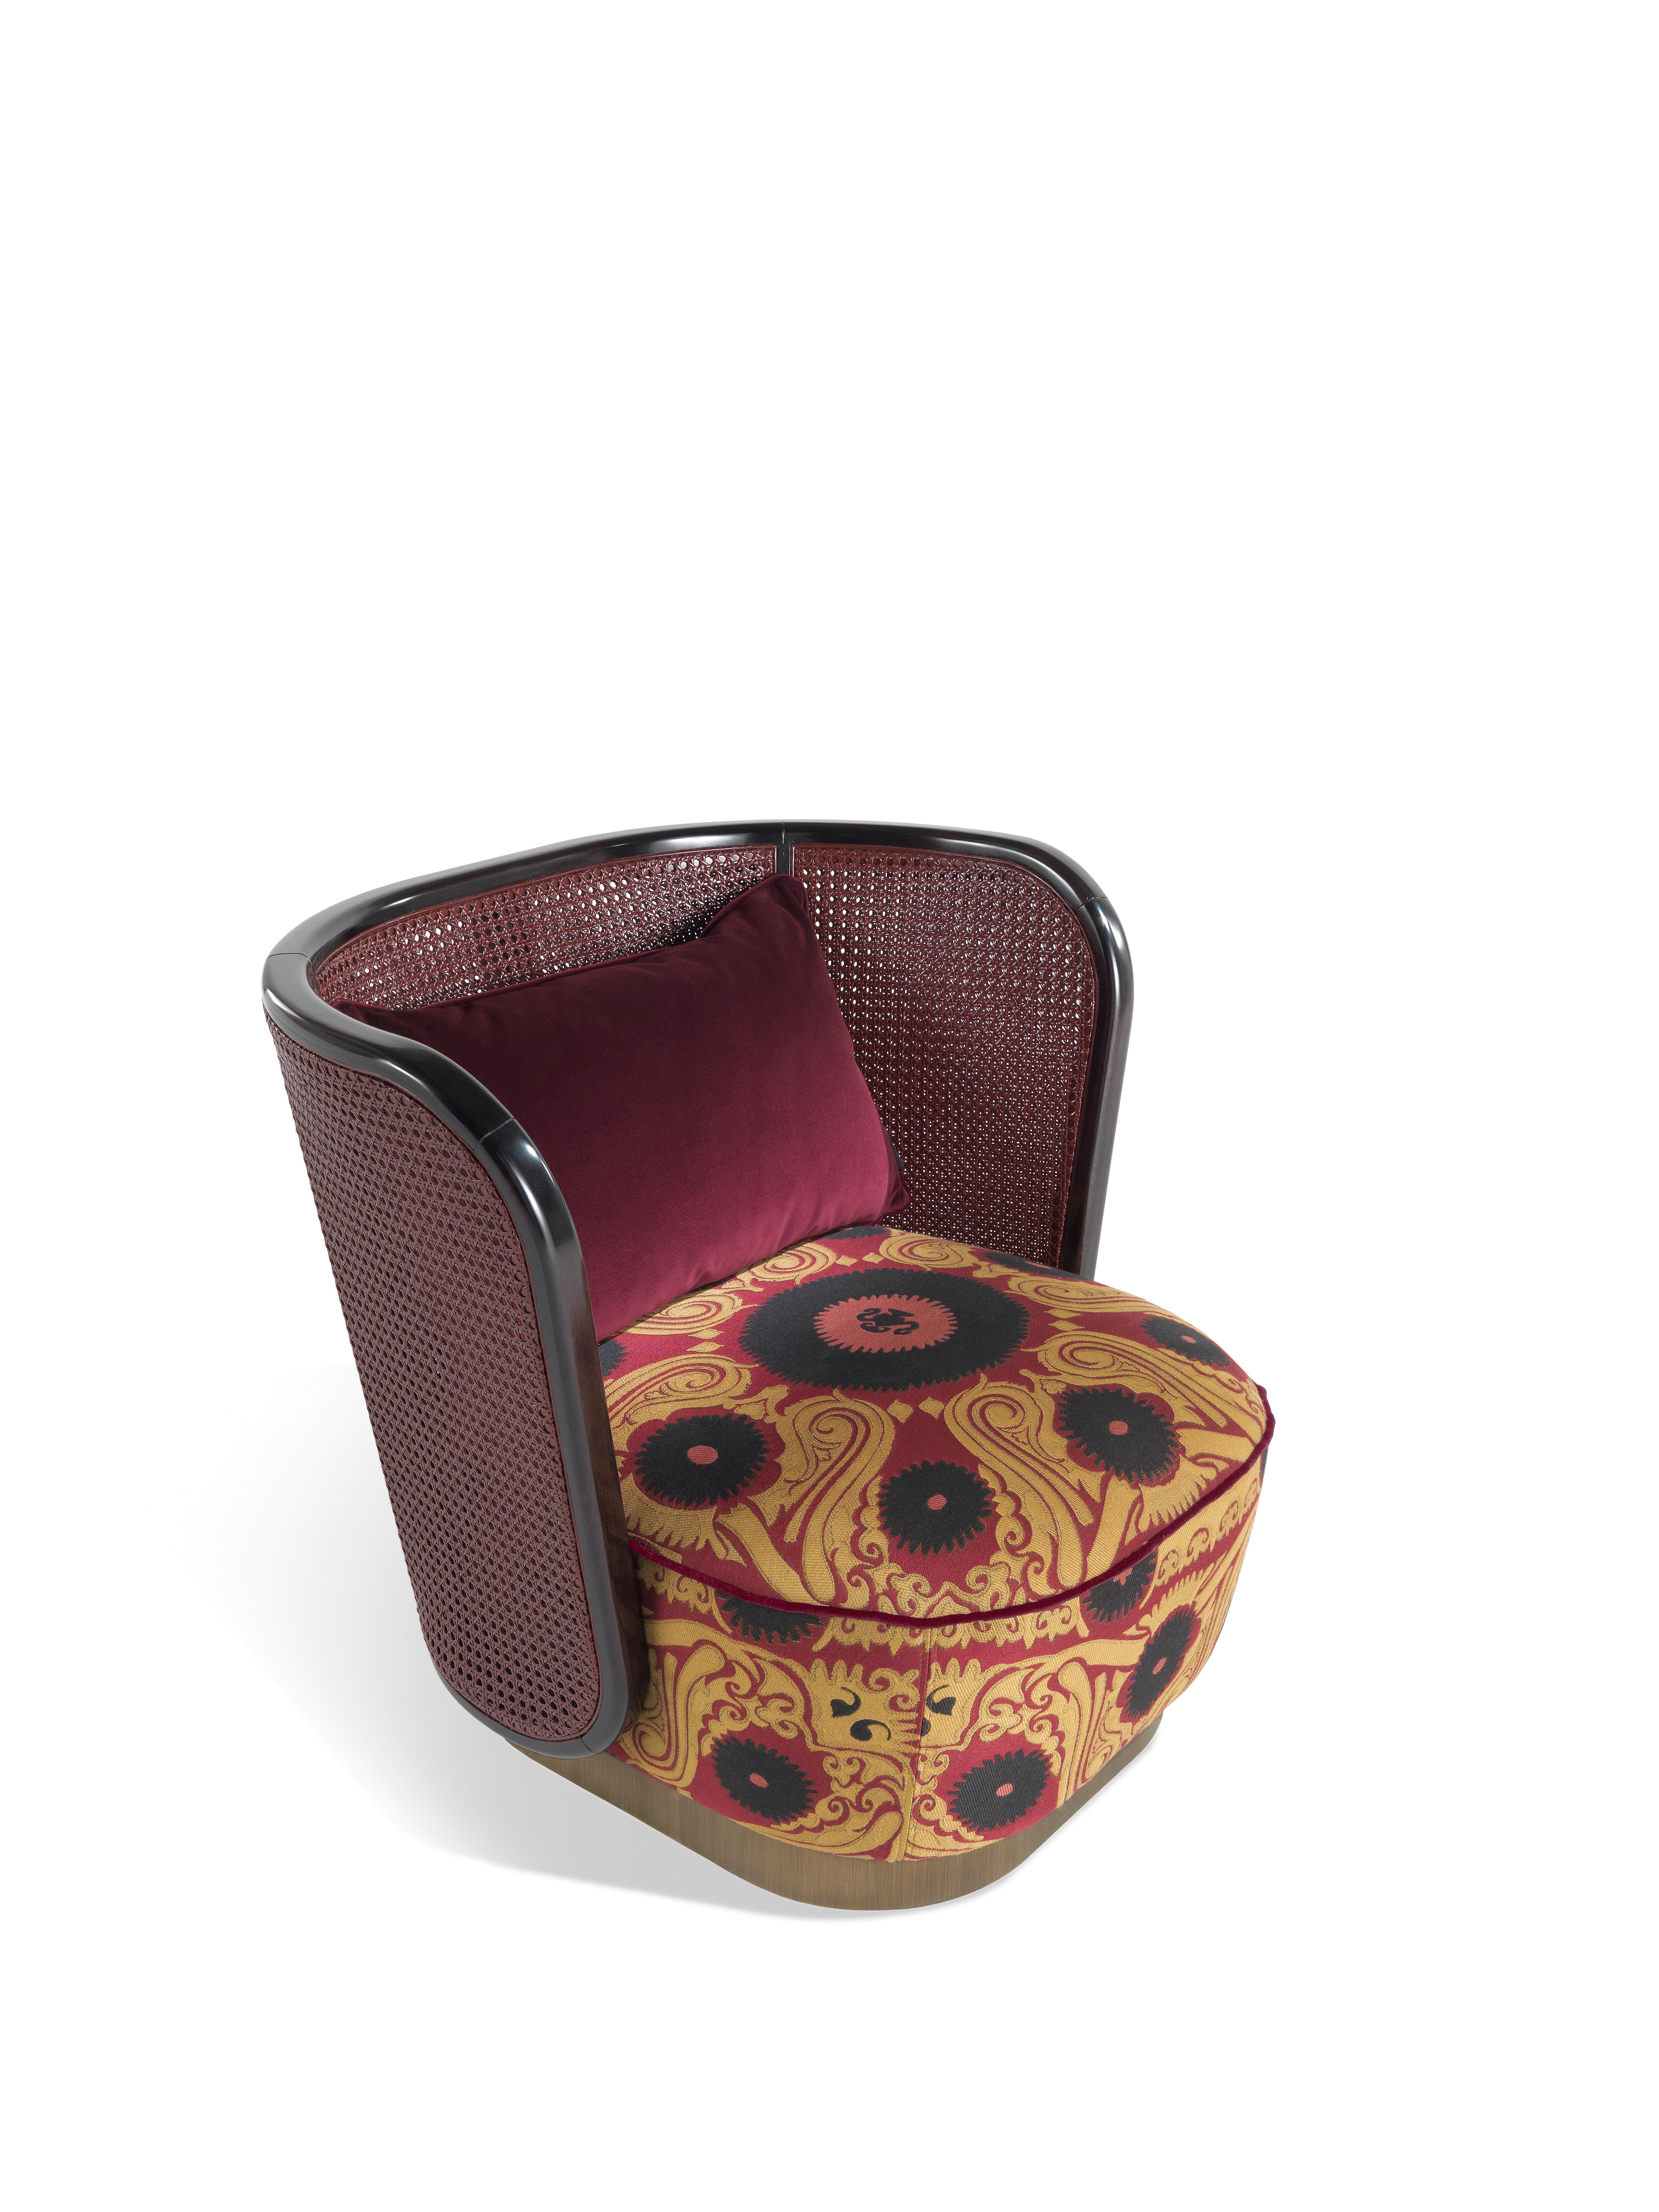 Ein Sessel mit weichen und umhüllenden Linien, dessen niedriger und bequemer Sitz in der Form an die Exotik einer traditionellen Ottomane erinnert. Die Polsterung aus dem Jacquard-Stoff Bukhara mit Suzani-Muster bildet einen harmonischen Kontrast